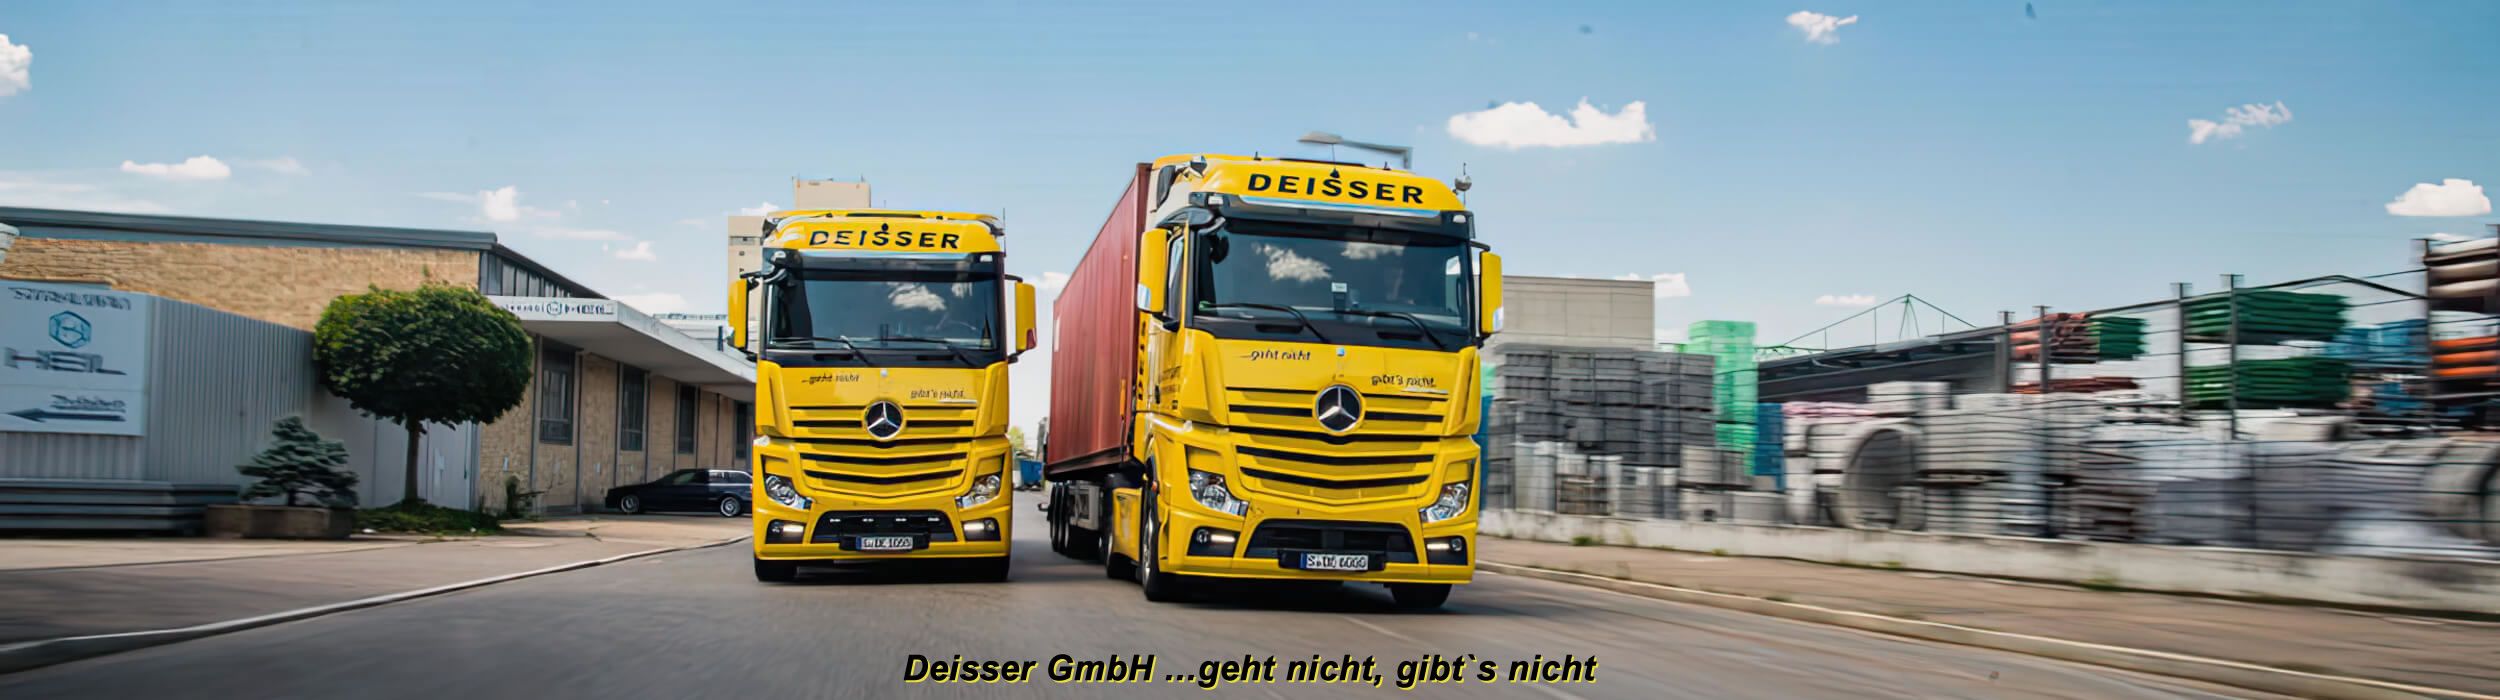 Deisser GmbH / Transportlogistik Seecontainer / Datenschutz